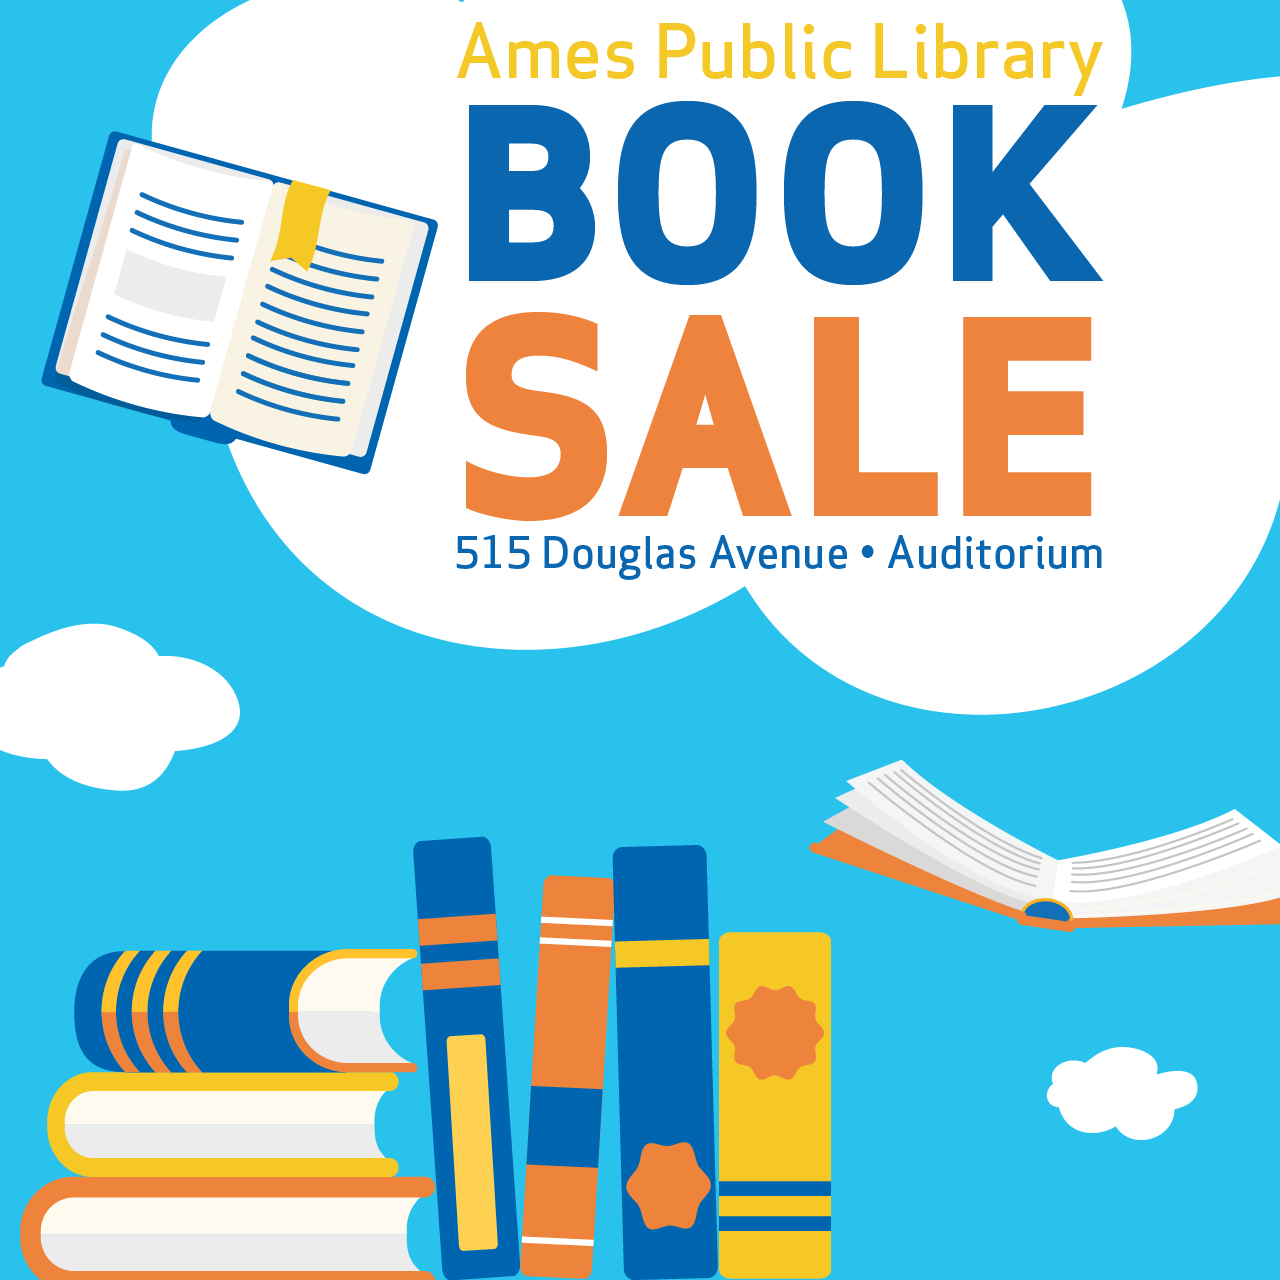 Ames Public Library Book Sale, 515 Douglas Avenue, Auditorium